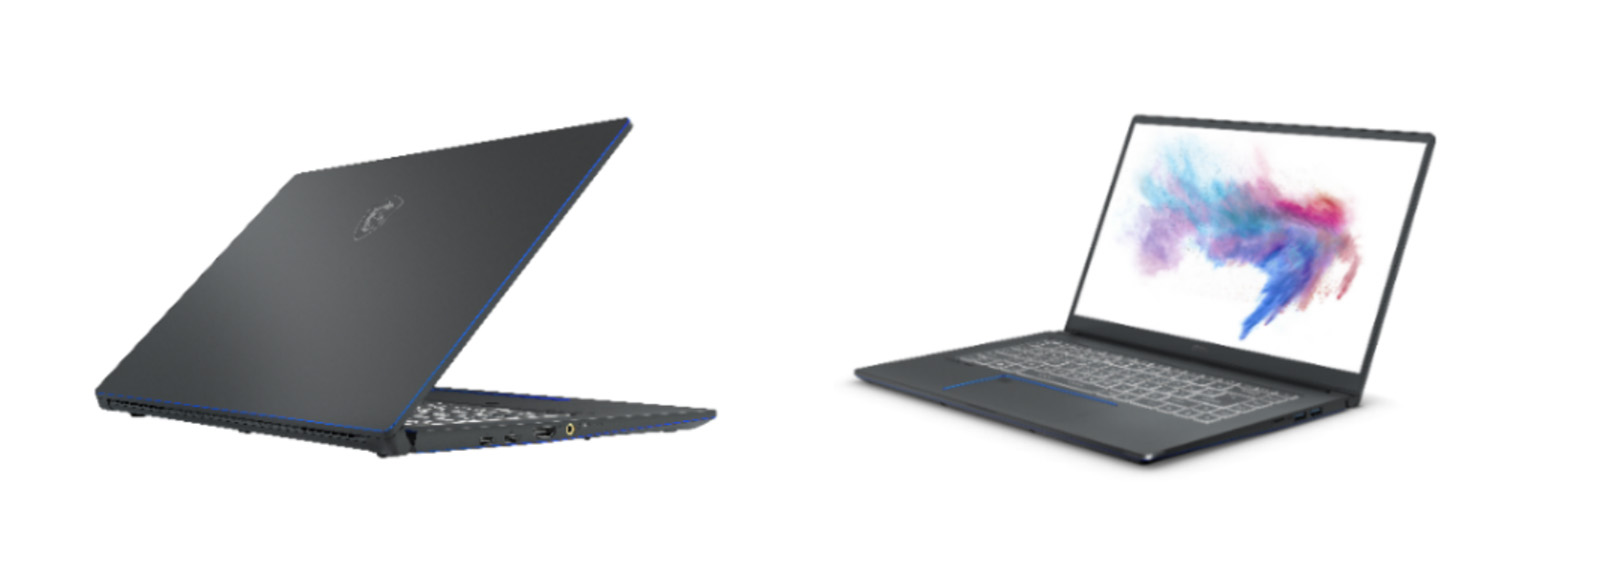 MSI ra mắt loạt laptop mới nhắm tới người dùng sáng tạo nội dung, giá từ 18,990,000 VNĐ